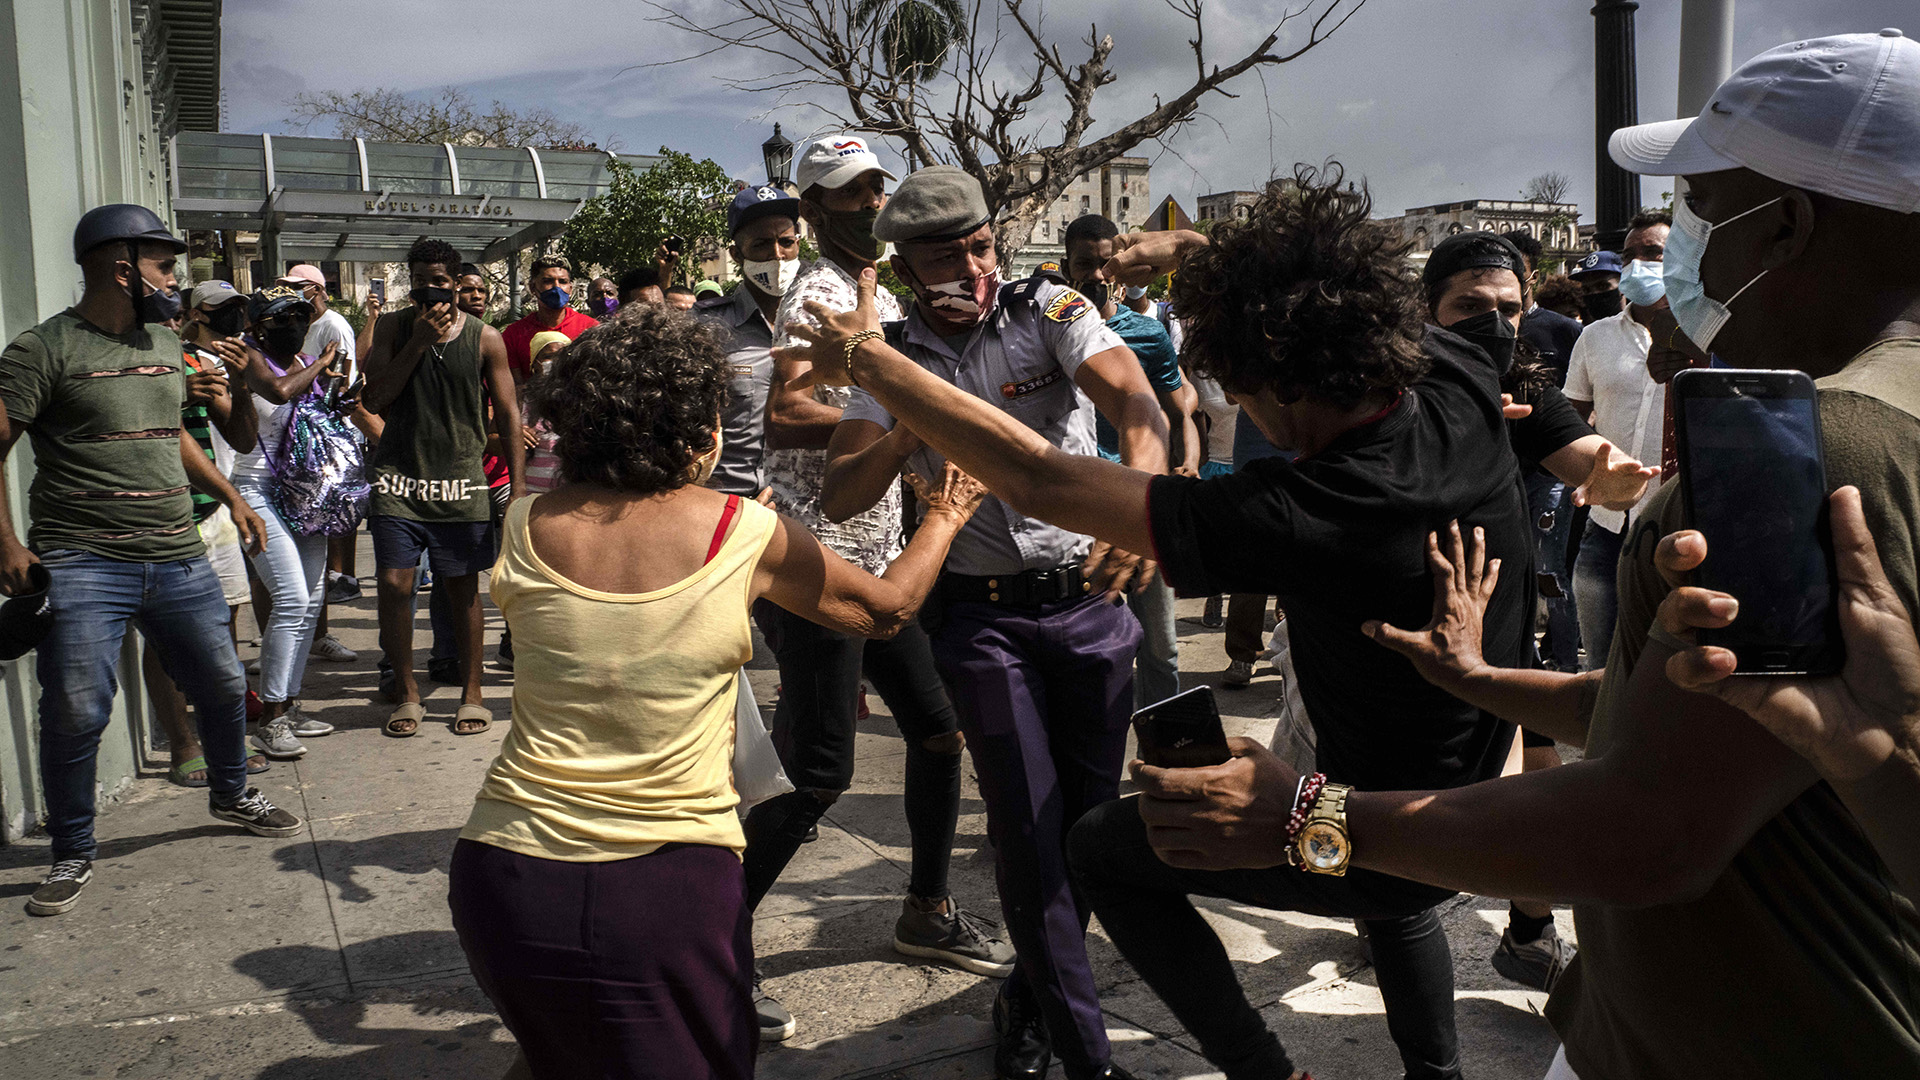 La policía pelea y detiene a un manifestante antigubernamental durante una protesta en La Habana, Cuba, el domingo 11 de julio de 2021. Cientos de manifestantes salieron a las calles en varias ciudades de Cuba para protestar contra la escasez de alimentos y los altos precios en medio de la crisis sanitaria por la pandemia de coronavirus. (Foto AP/Ramón Espinosa)